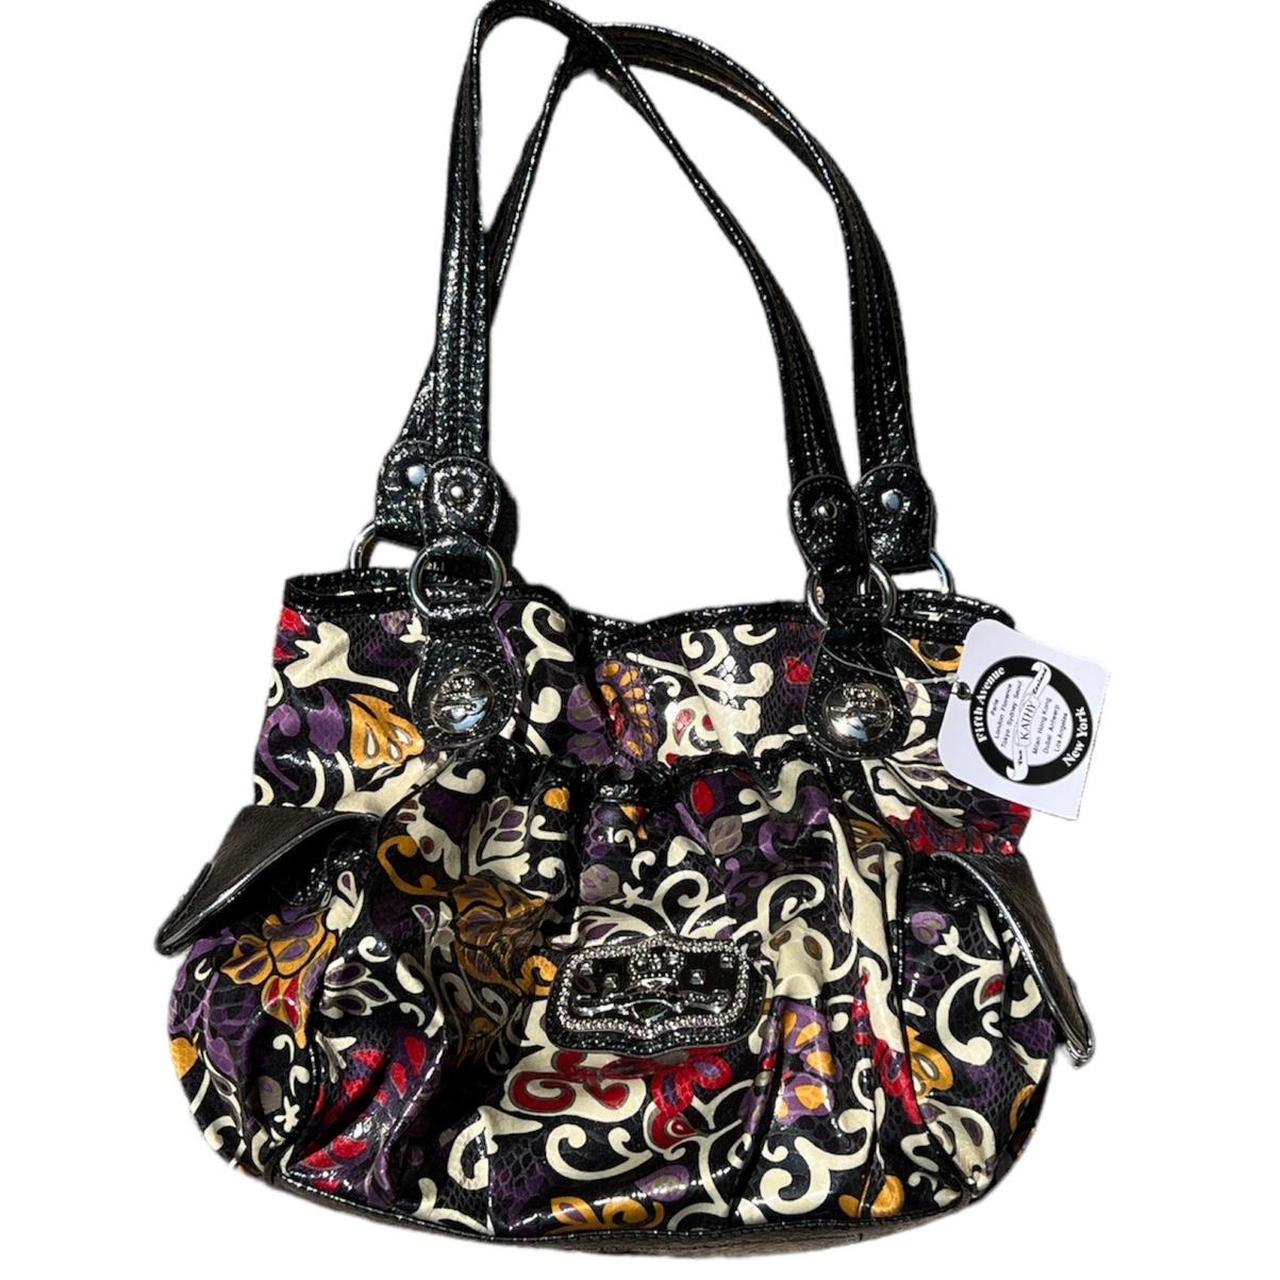 Kathy Van Zeeland Pebble Leather Handbags | Mercari